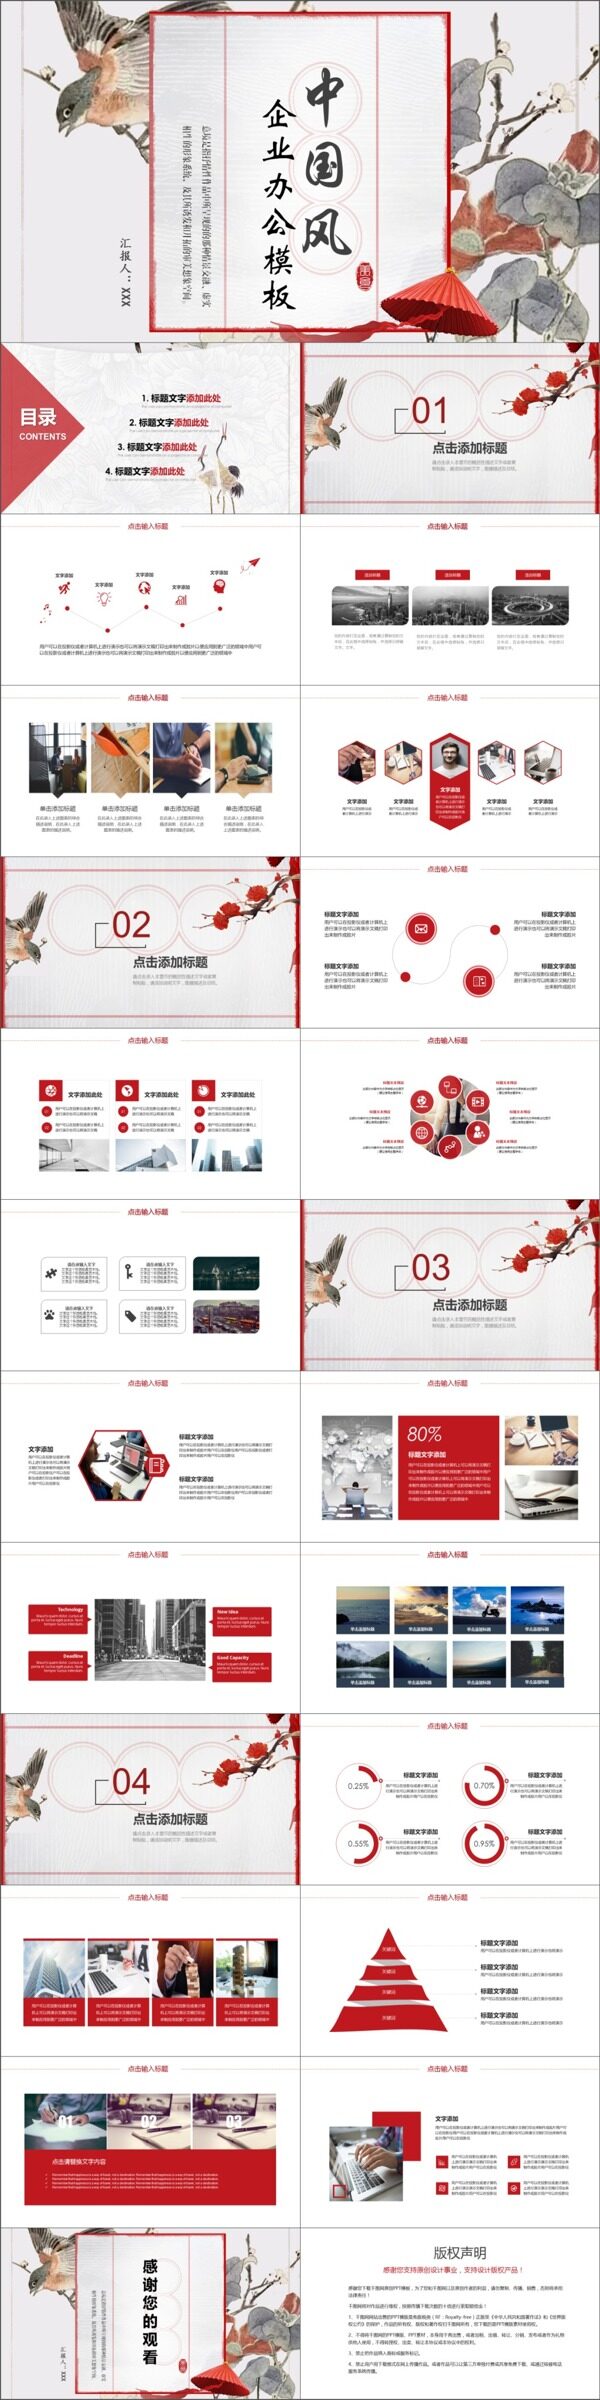 2019红色中国风花鸟企业宣传通用PPT模板